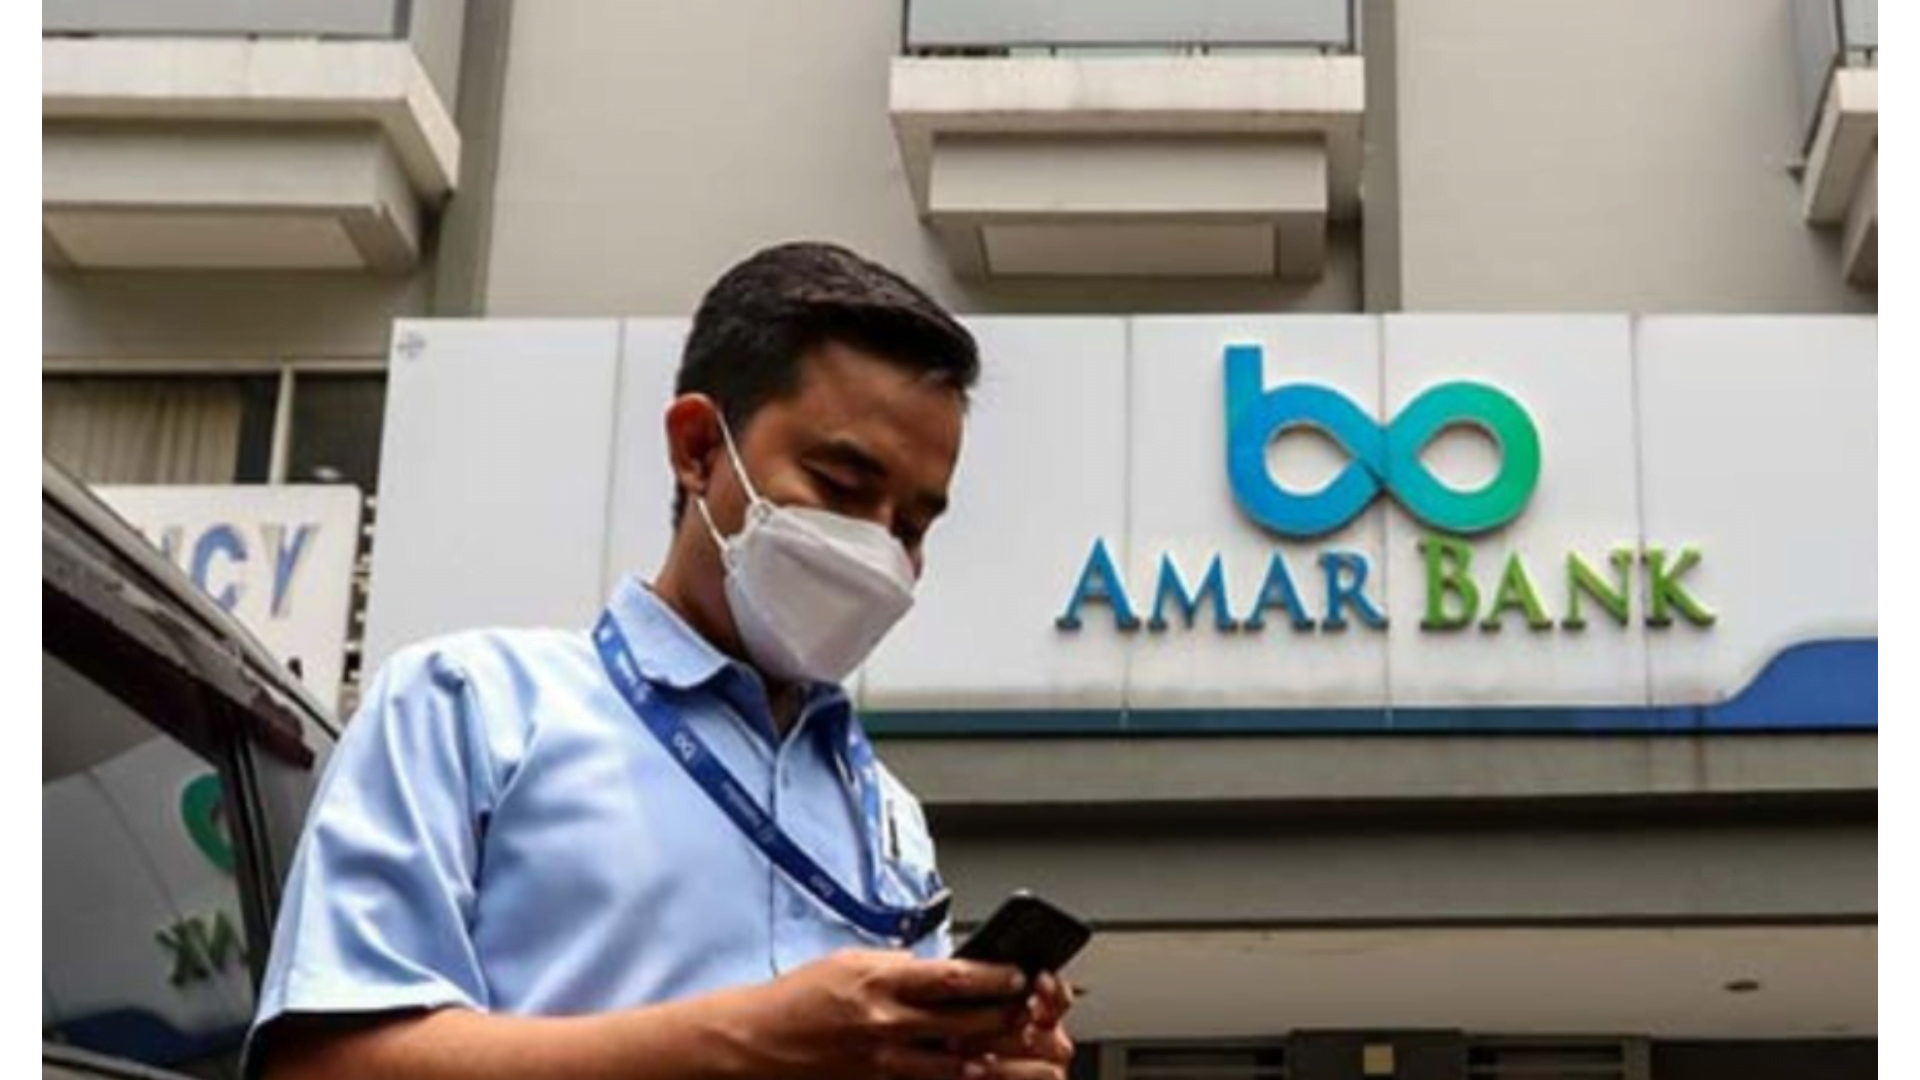 Amar Bank, Perbankan Digital Terdaftar di OJK